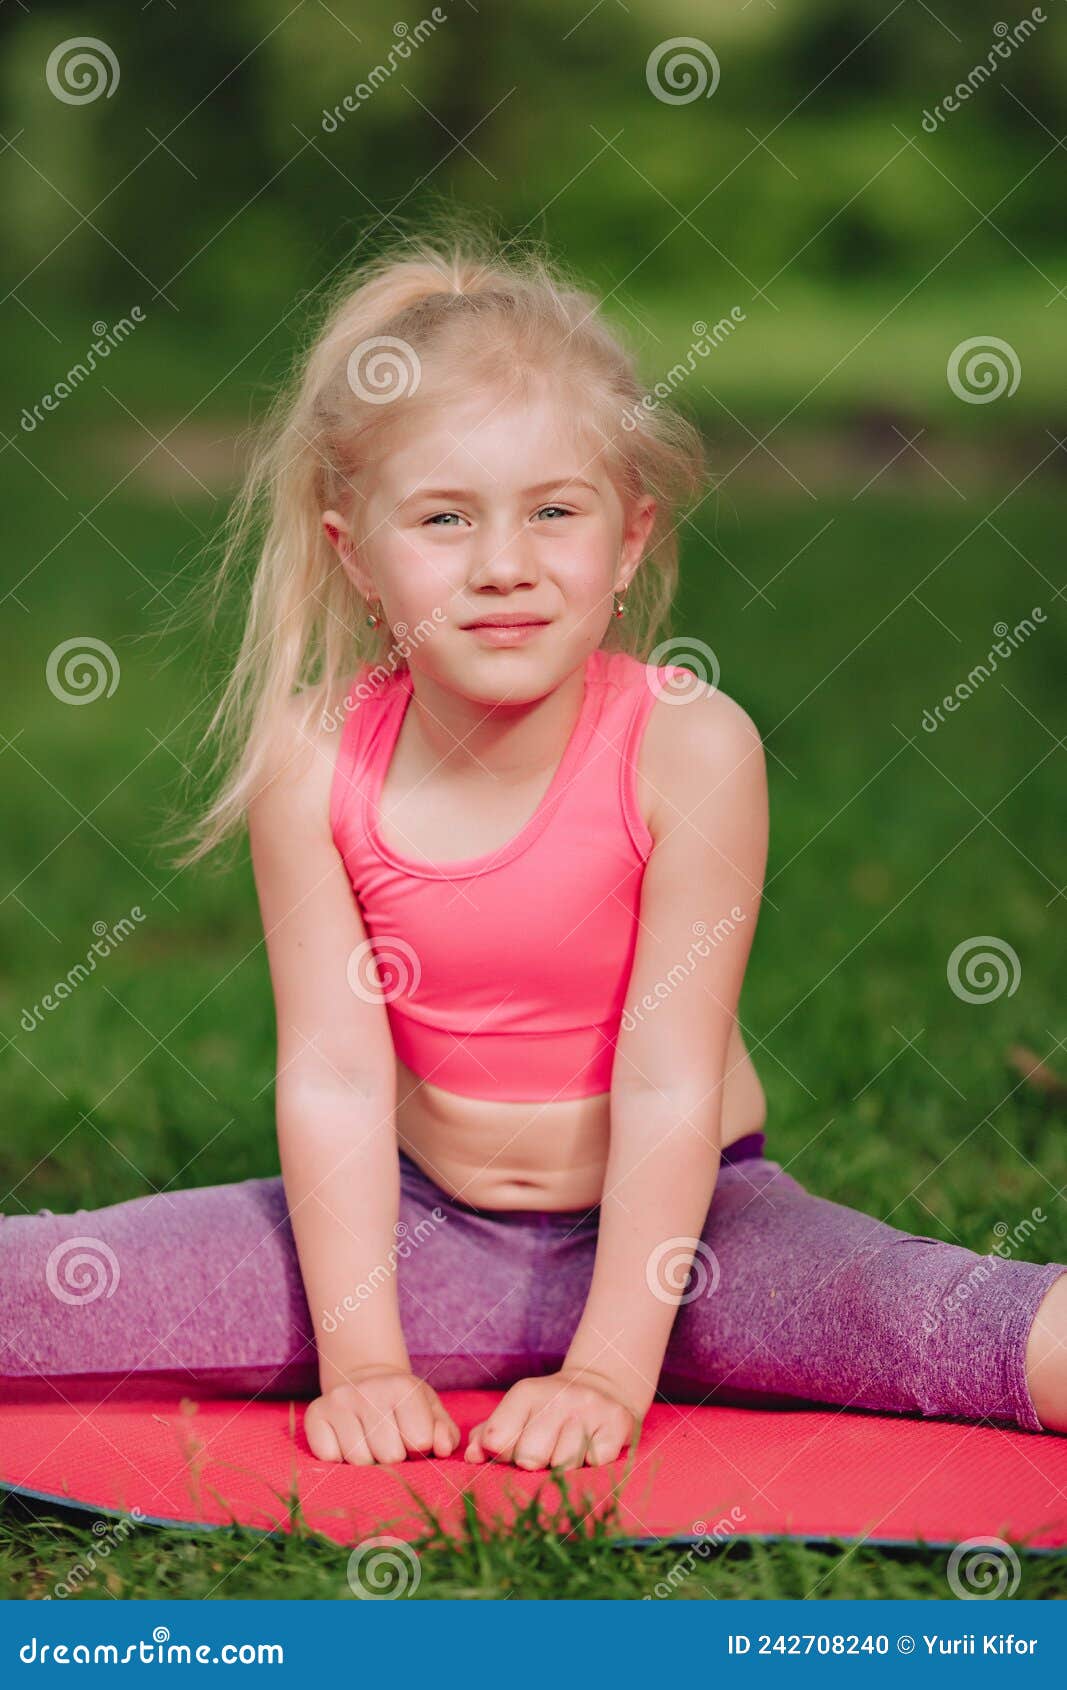 La Bellissima Bambina Di 7 Anni è Impegnata in Fitness Nei Campi